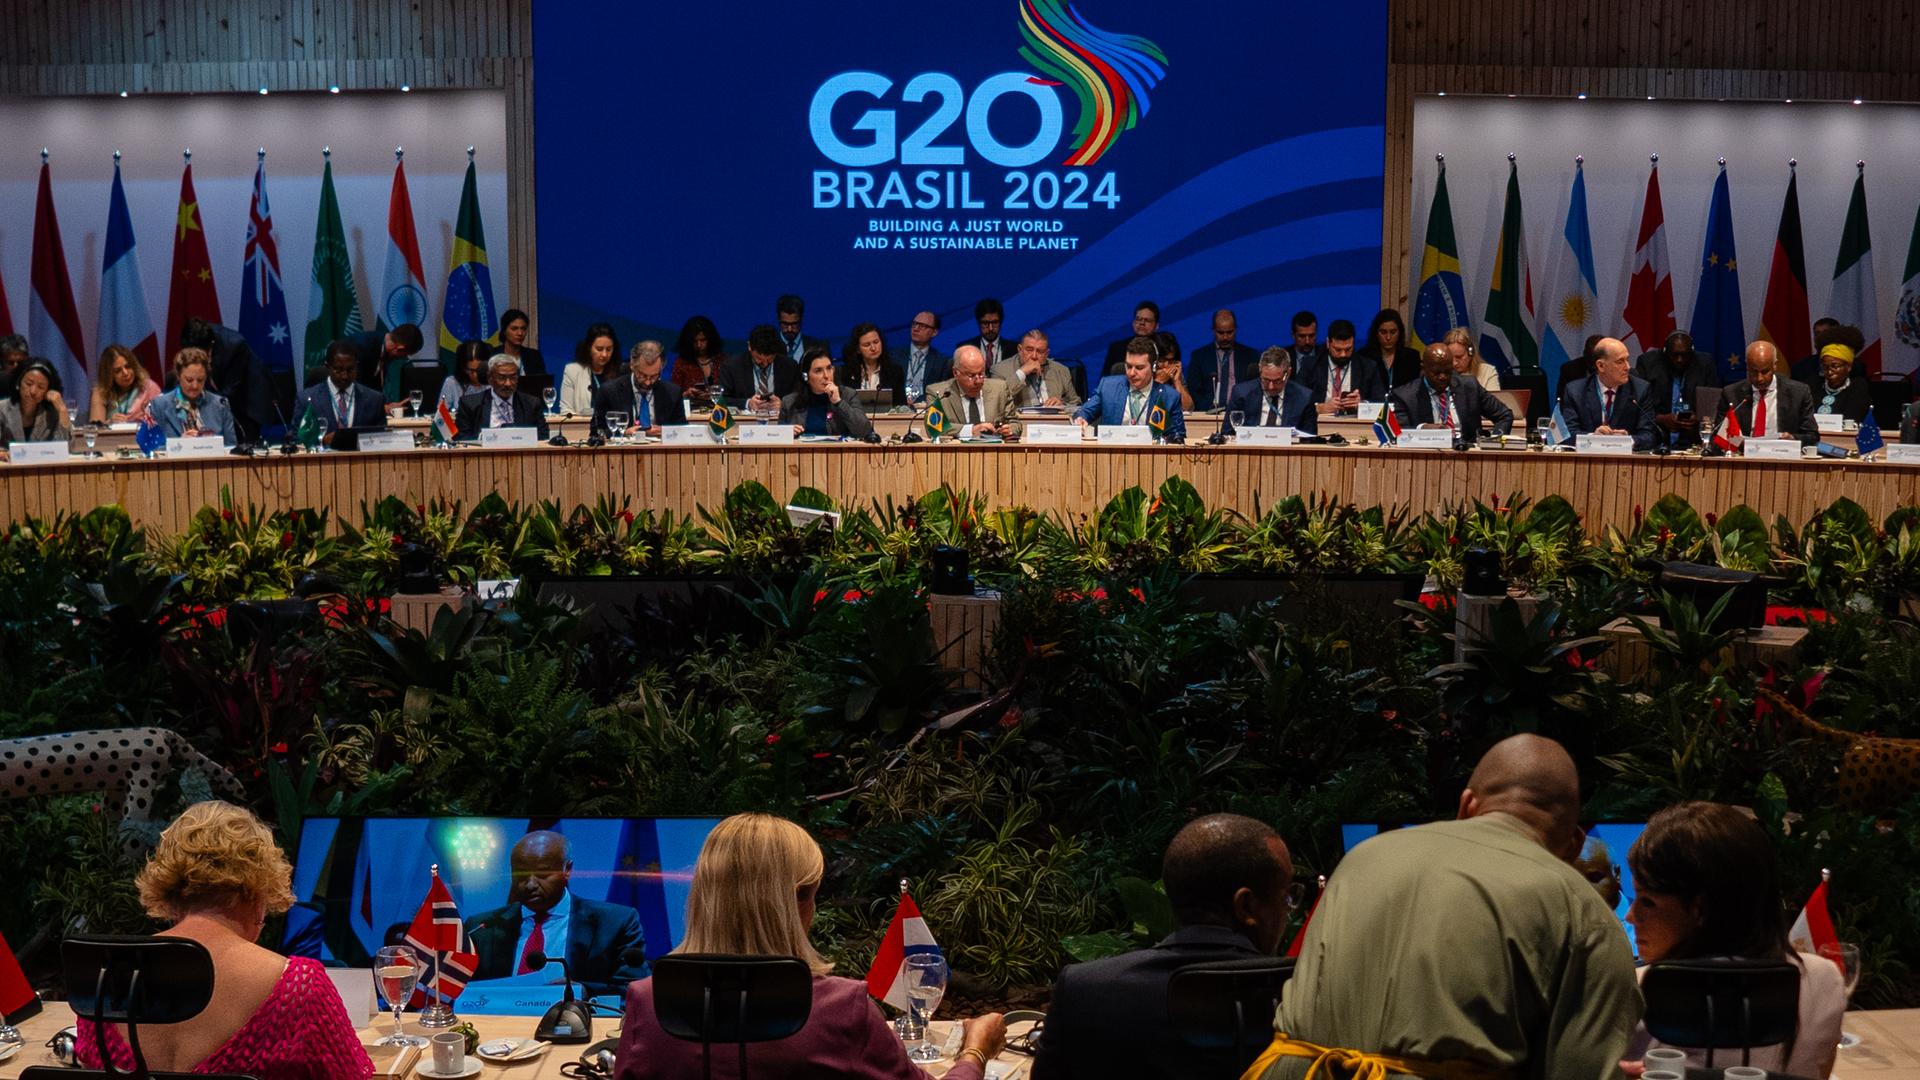 Das Bild zeigt einen Blick in einen großen Konferenz-Saal mit zahlreichen Teilnehmern auf einem Panel und vielen Menschen im Zuschauer-Raum. Über dem Panel hängt ein großes Logo mit der Aufschrift "G20 Brasil 2024"